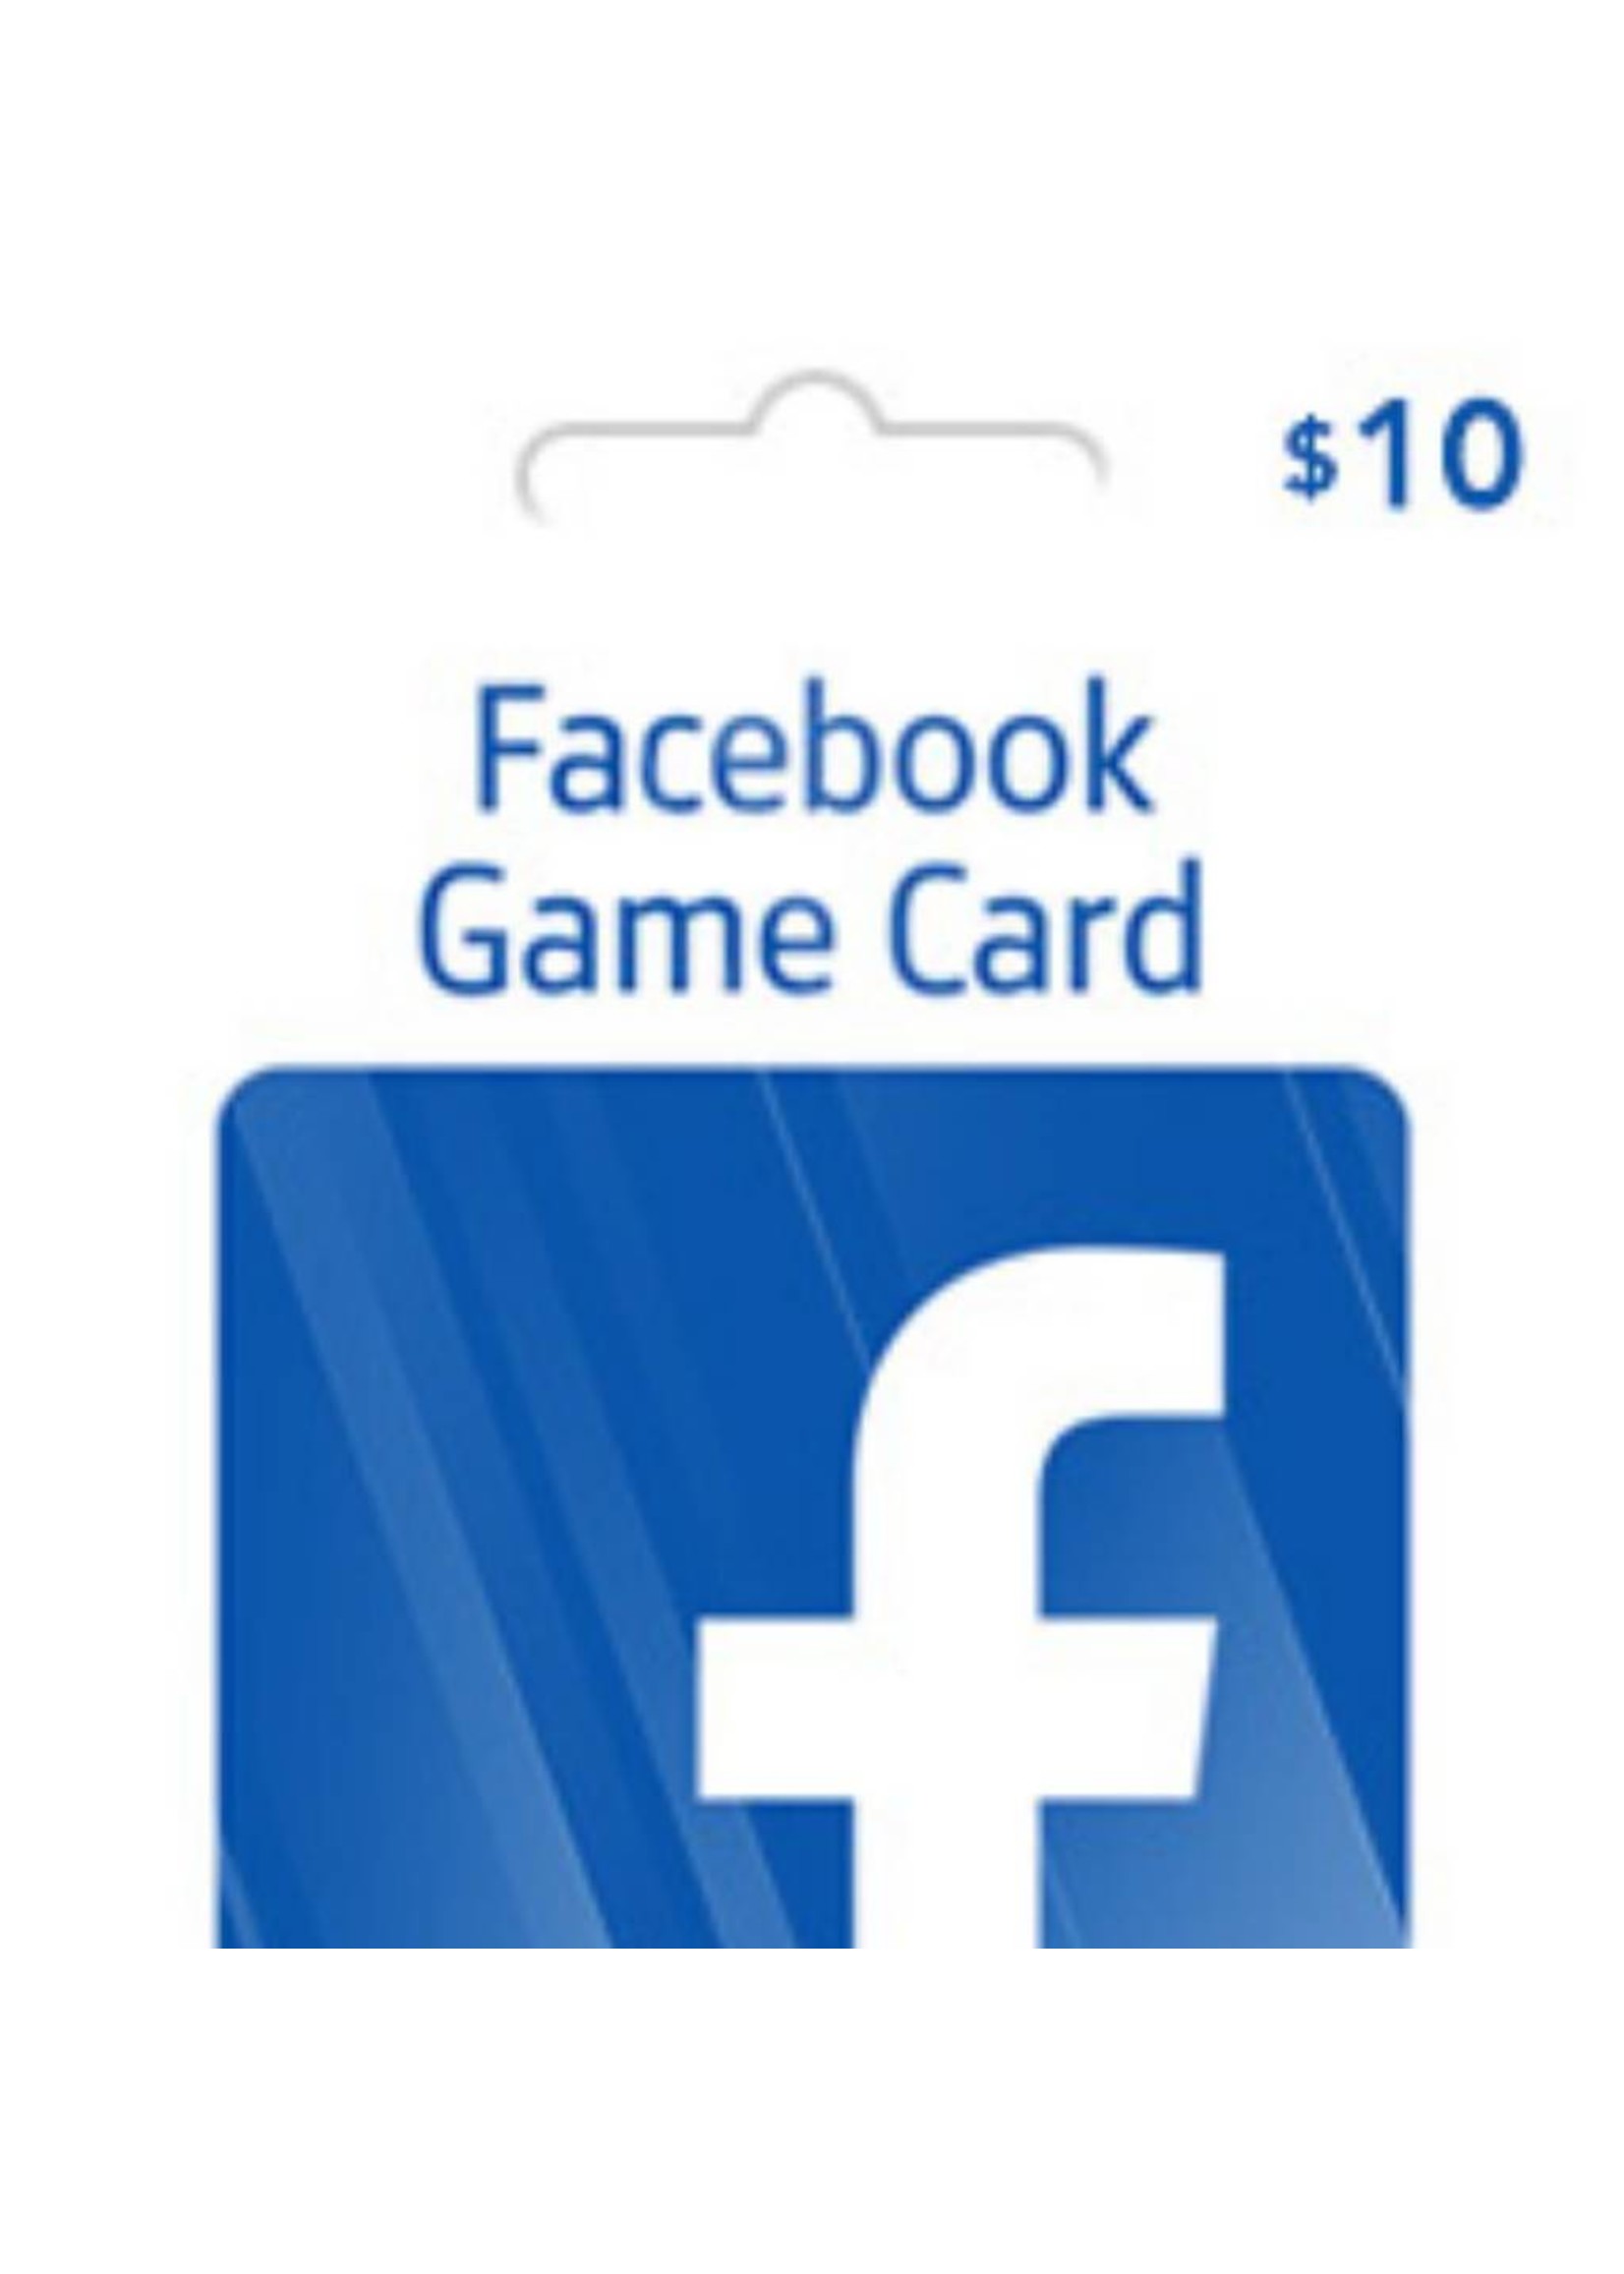 Facebook $10 Gift Card